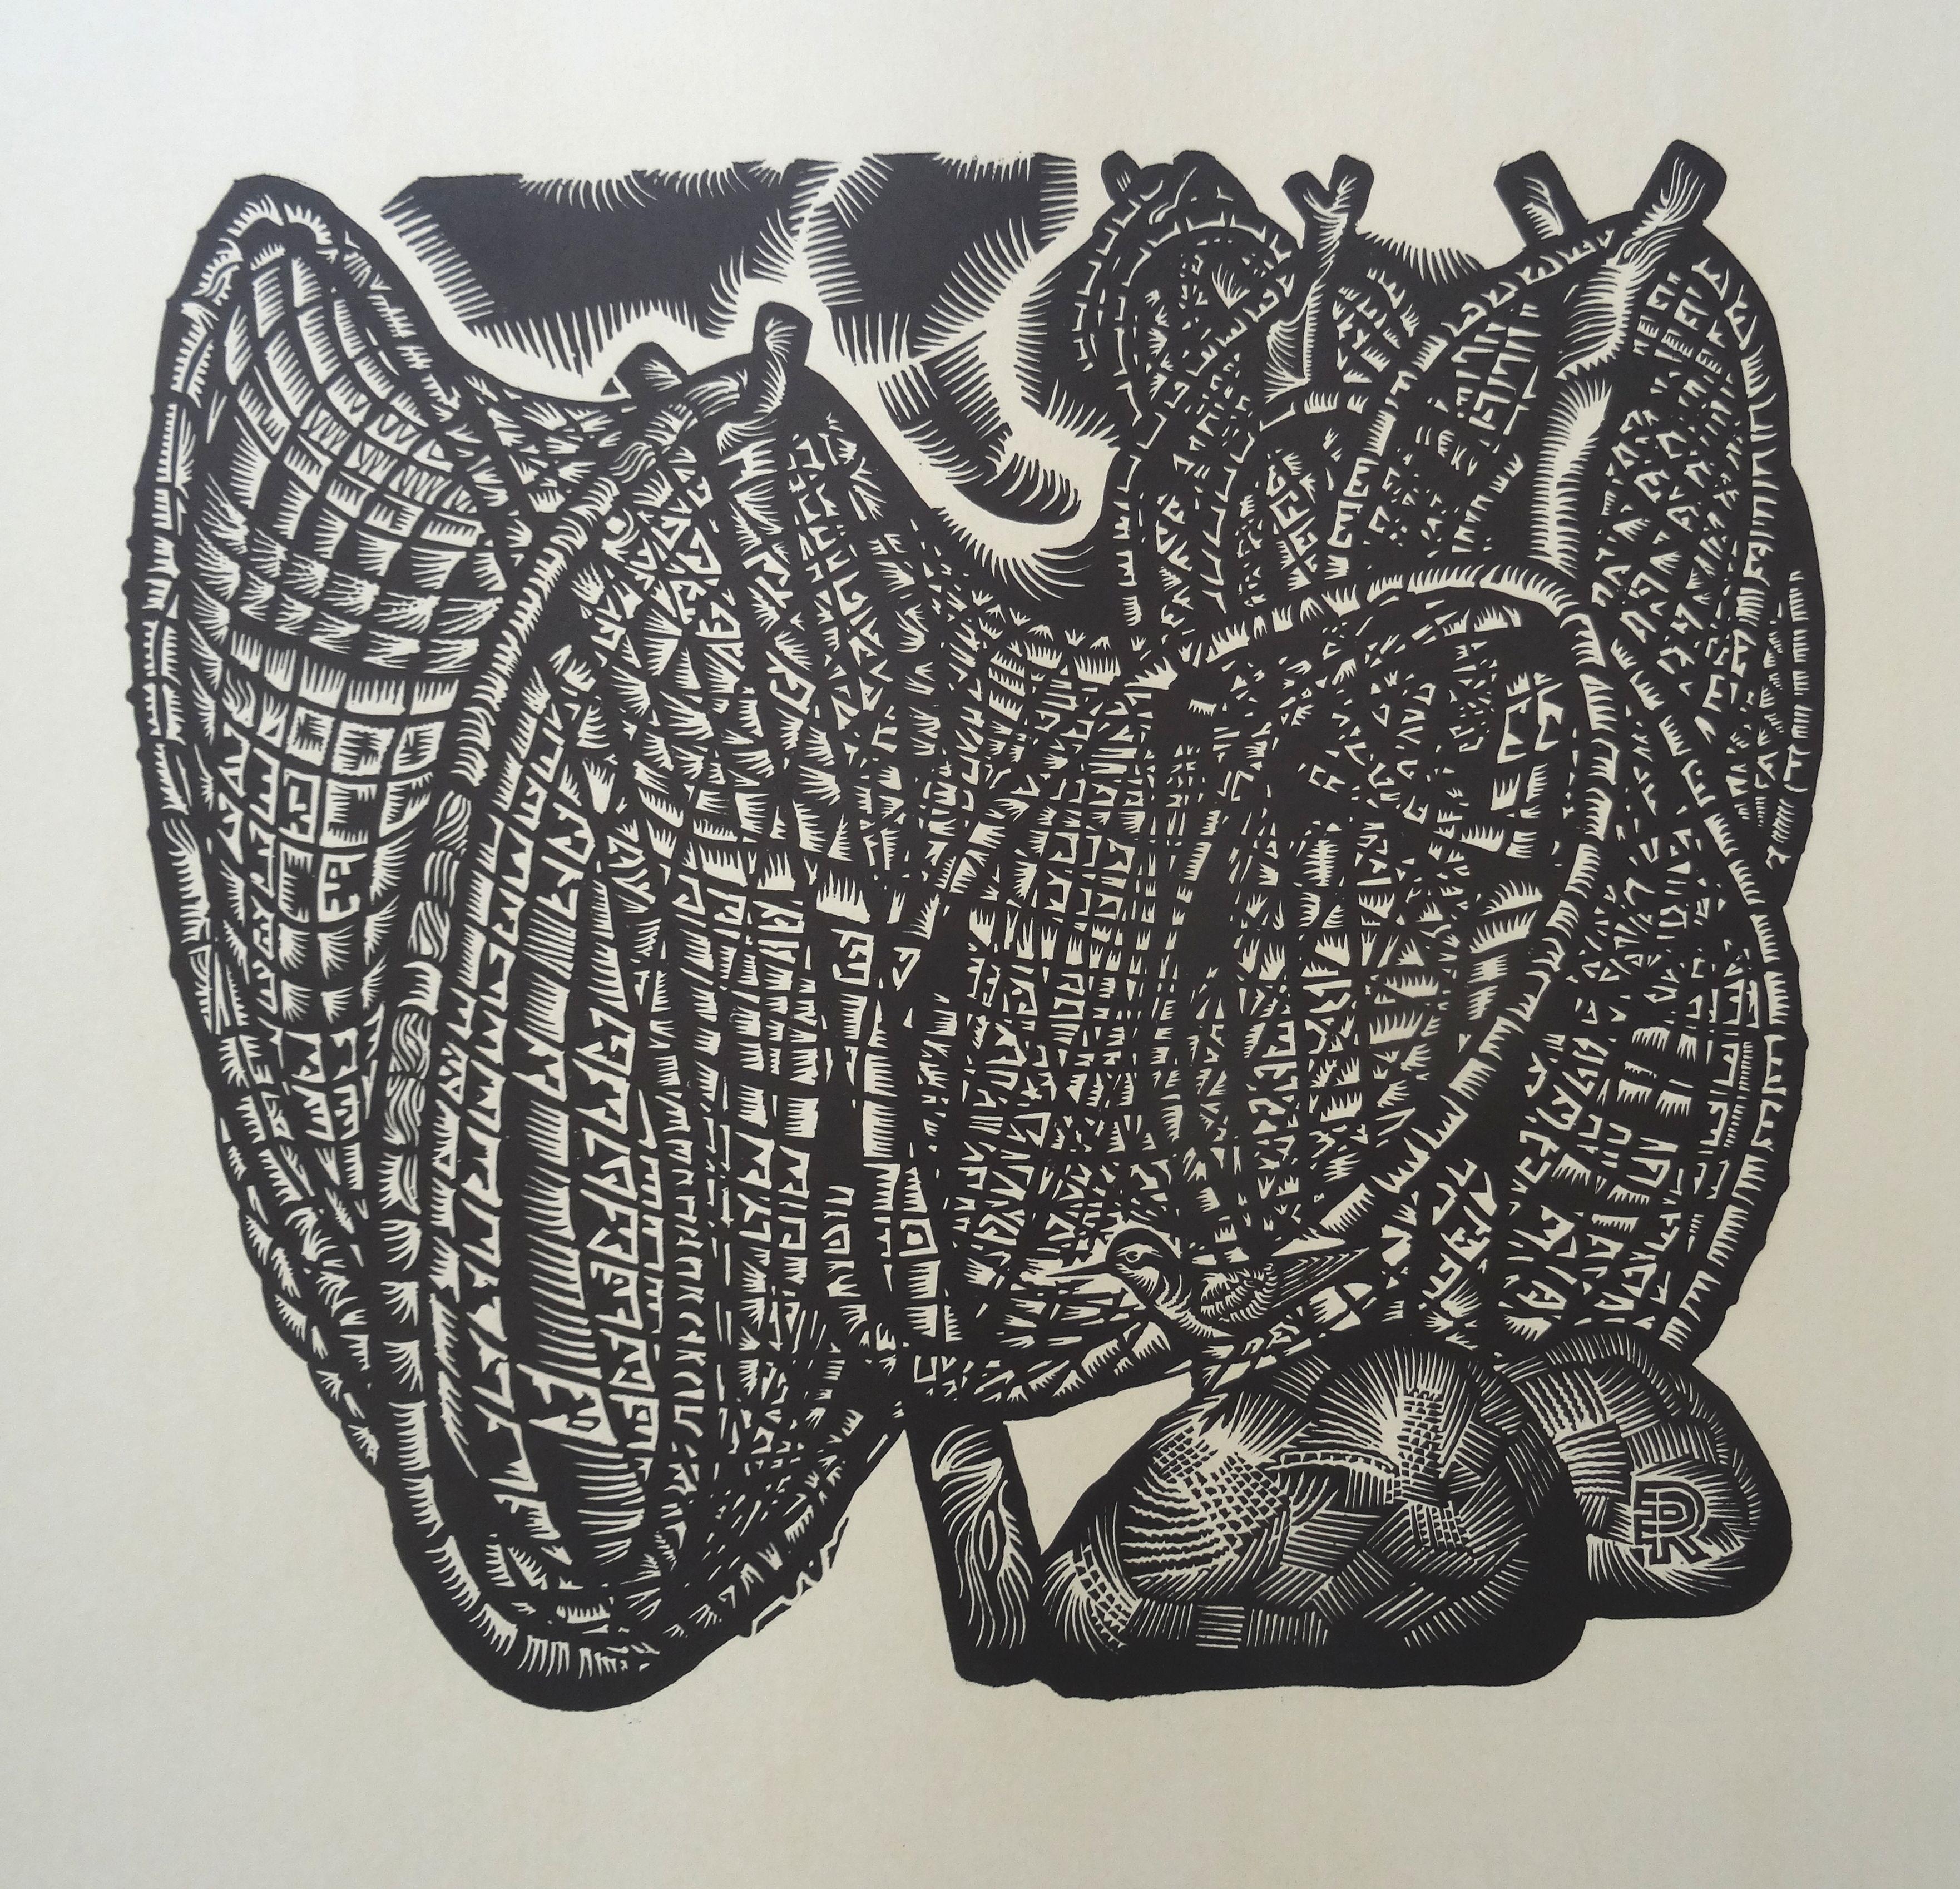 Vogelgrüner Sandpiper. 1976., Papier, Linolschnitt, 80x65 cm